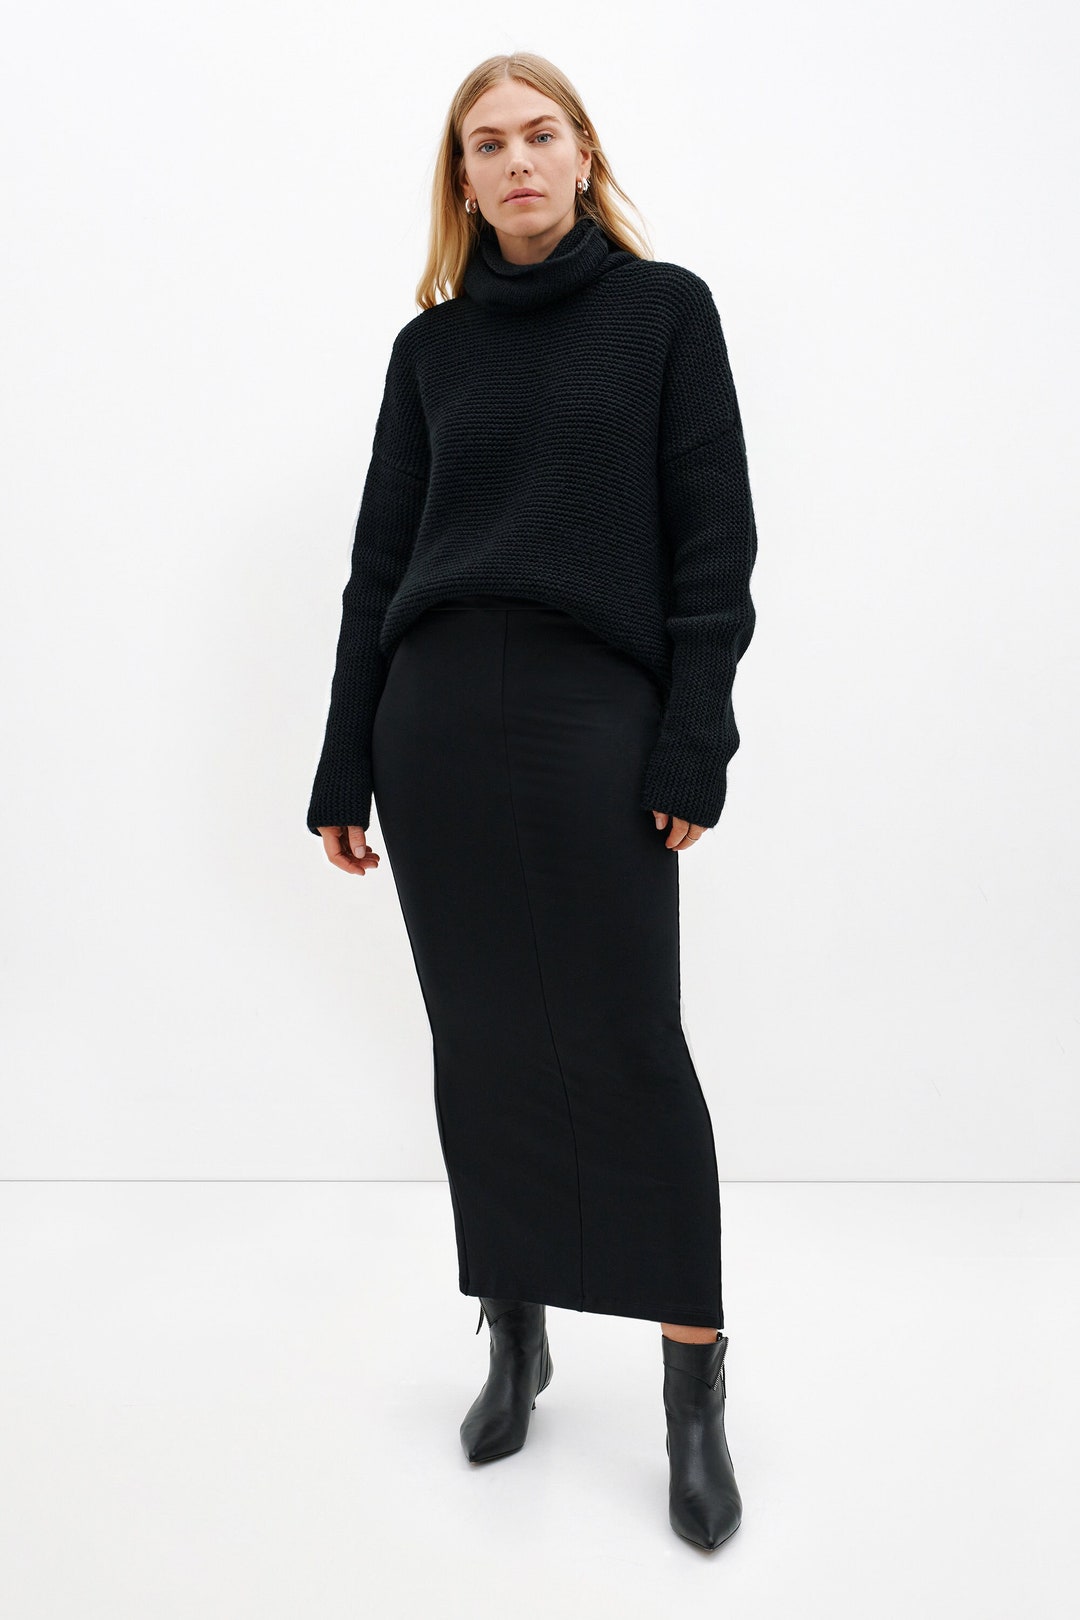 NEW Fitted Black Skirt, Black Midi Skirt, Long Pencil Skirt, Stretchy ...